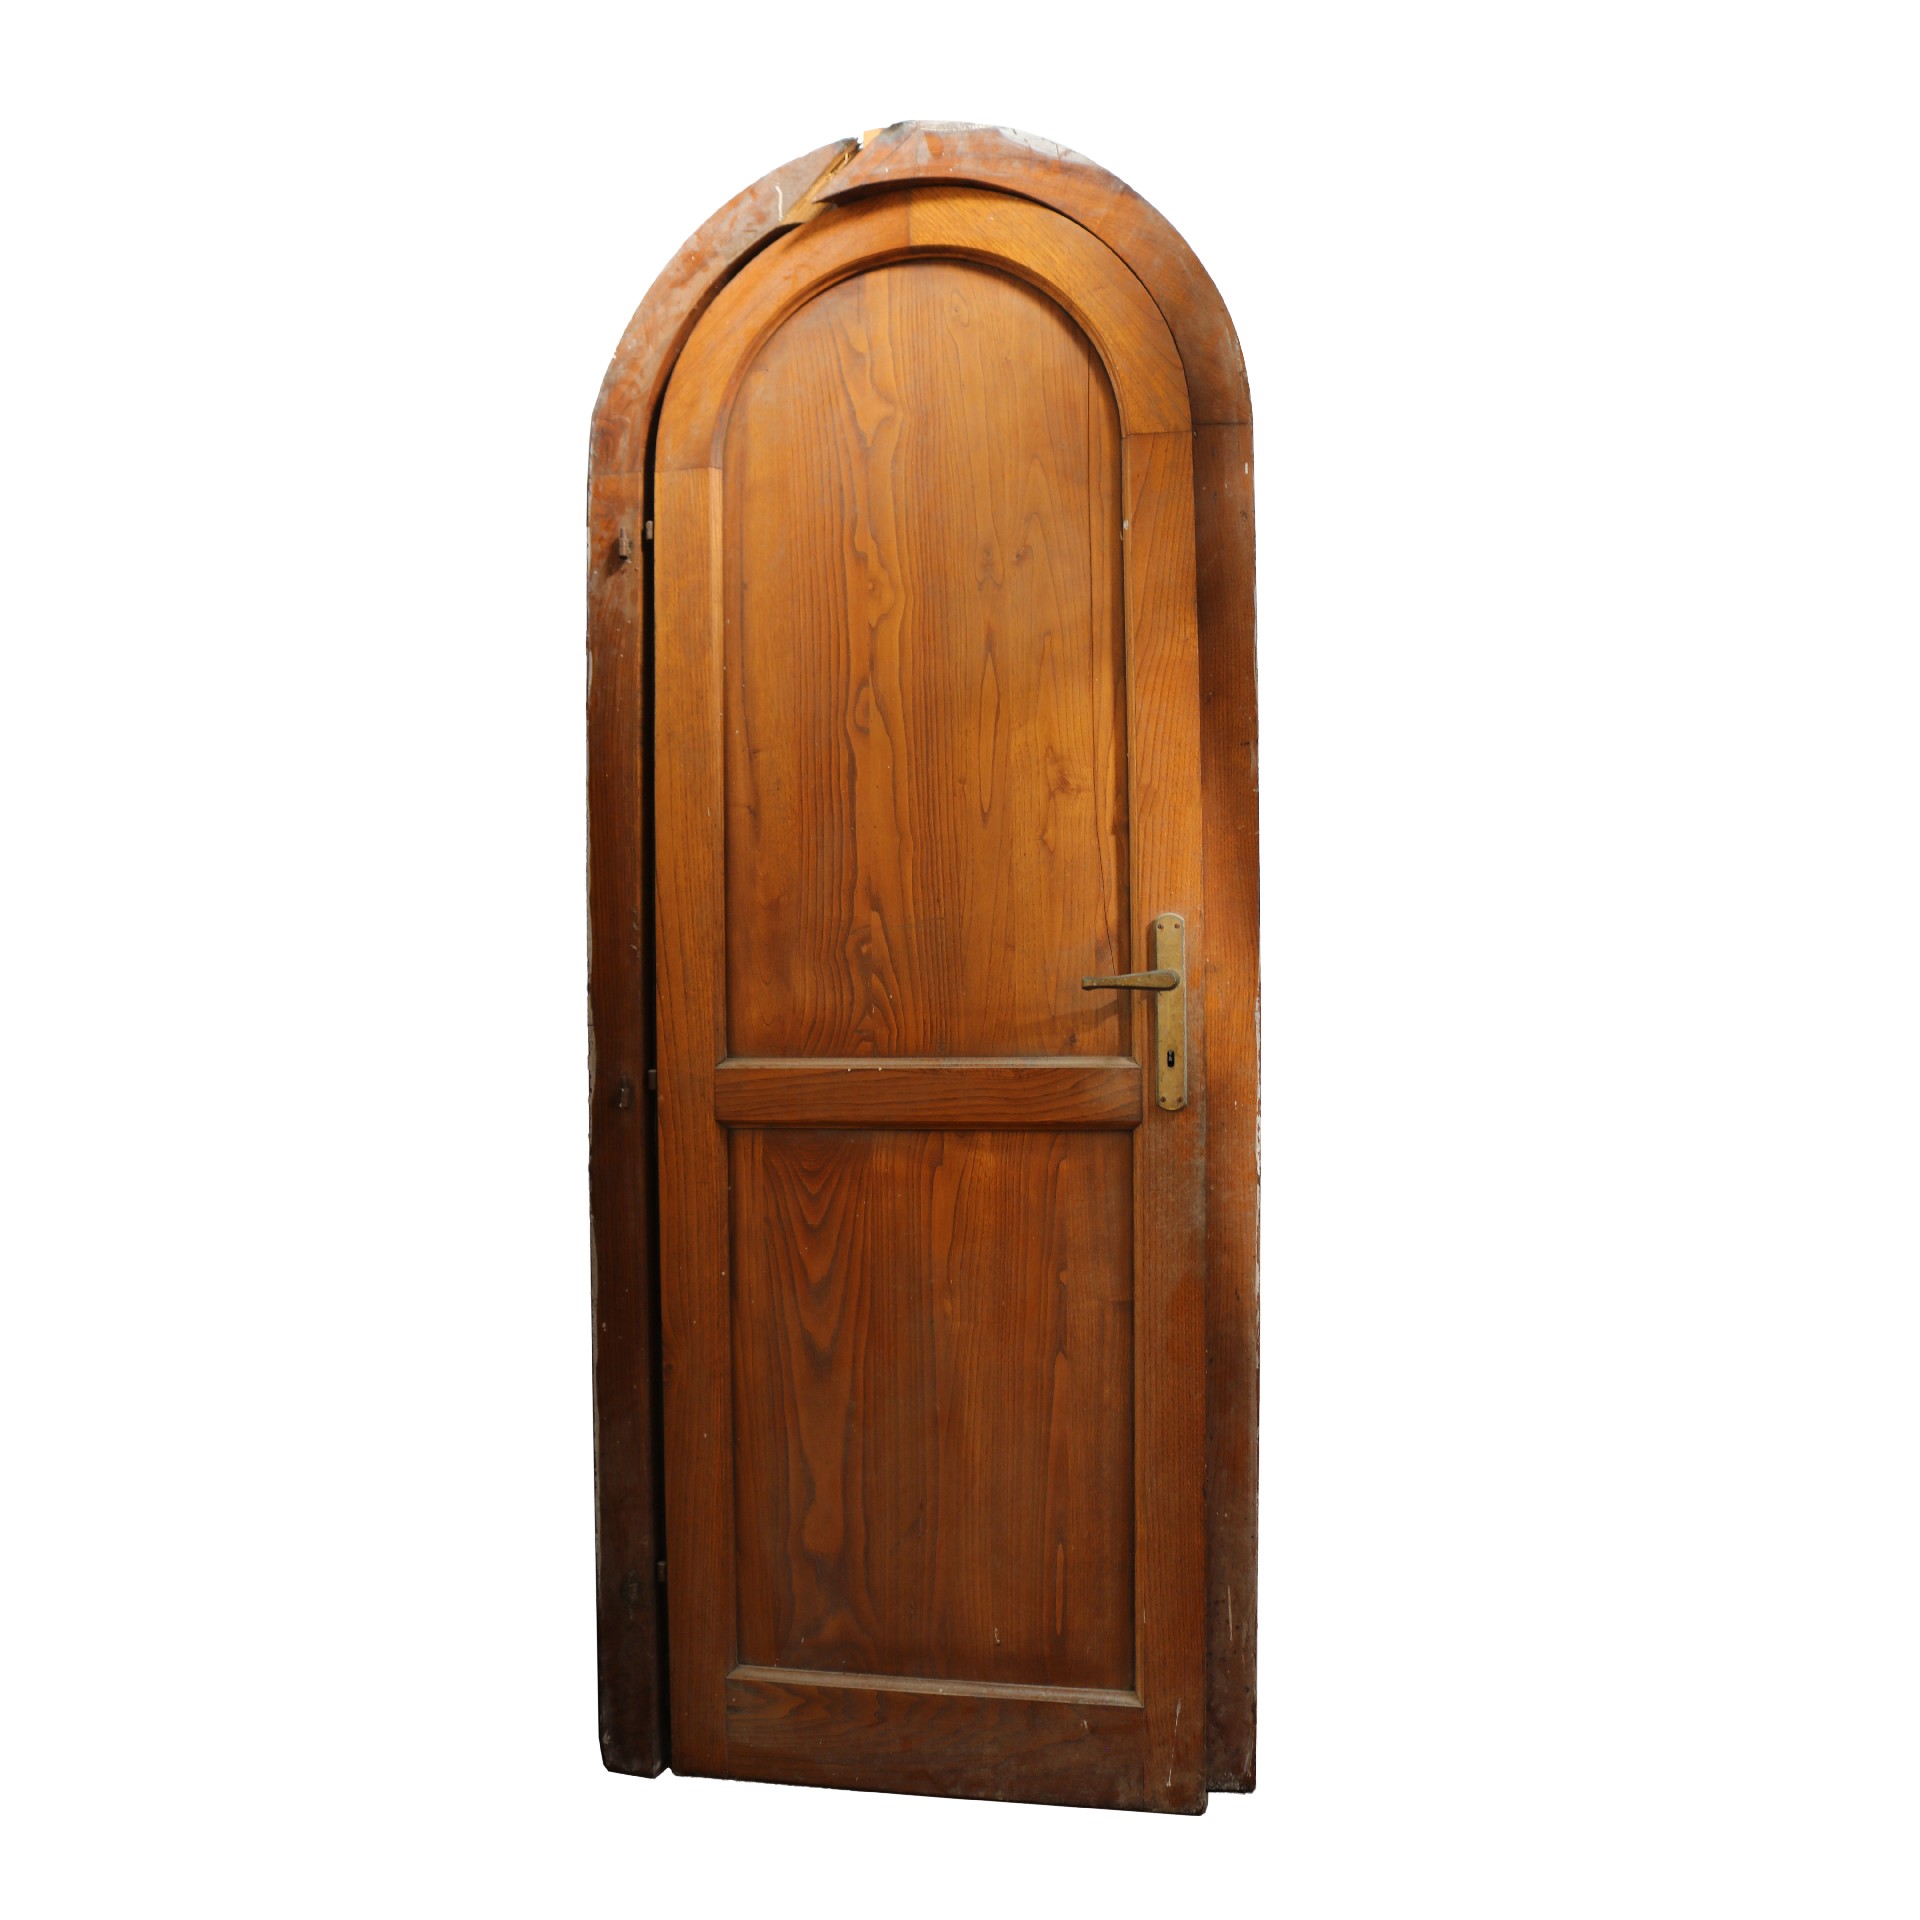 Porta in legno. - Porte in Legno - Porte Antiche - Prodotti - Antichità Fiorillo